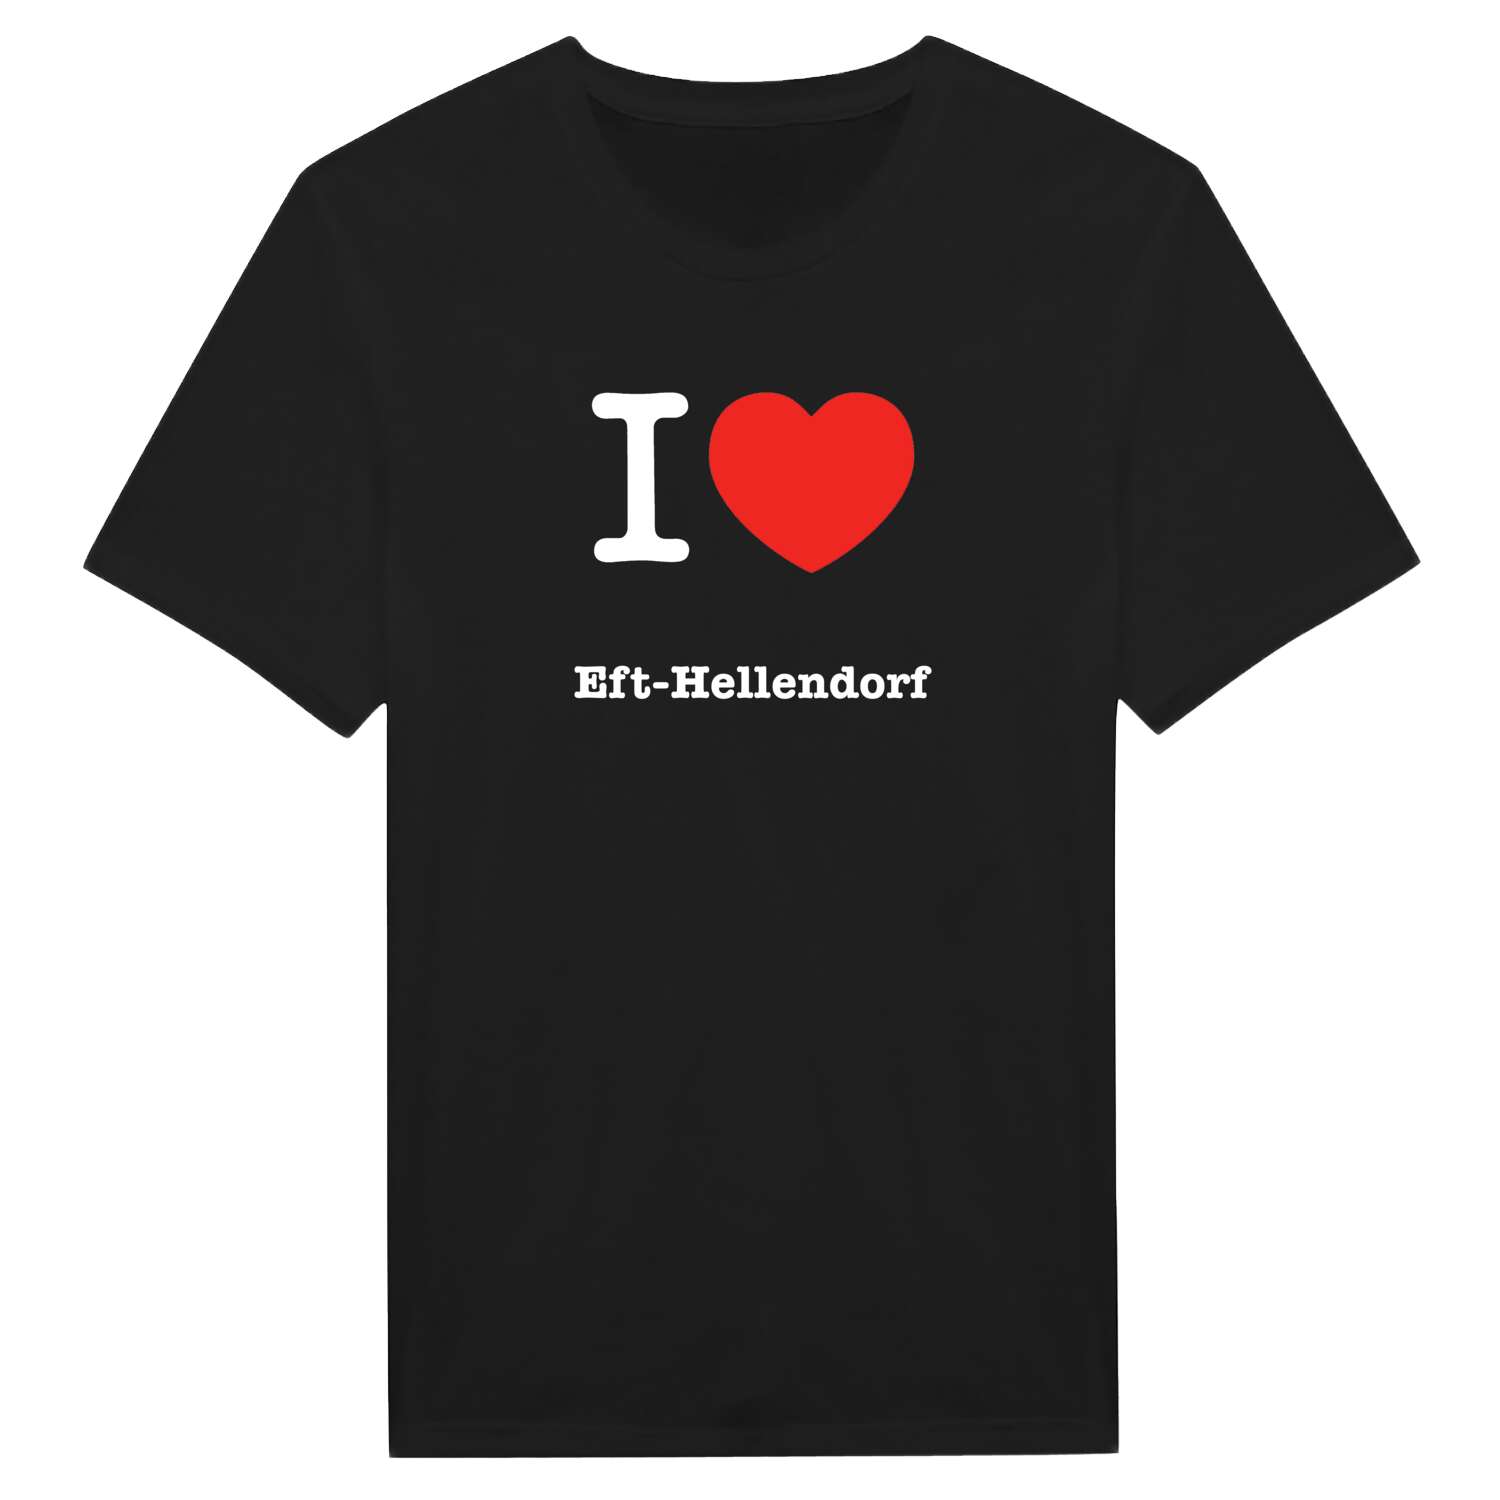 Eft-Hellendorf T-Shirt »I love«